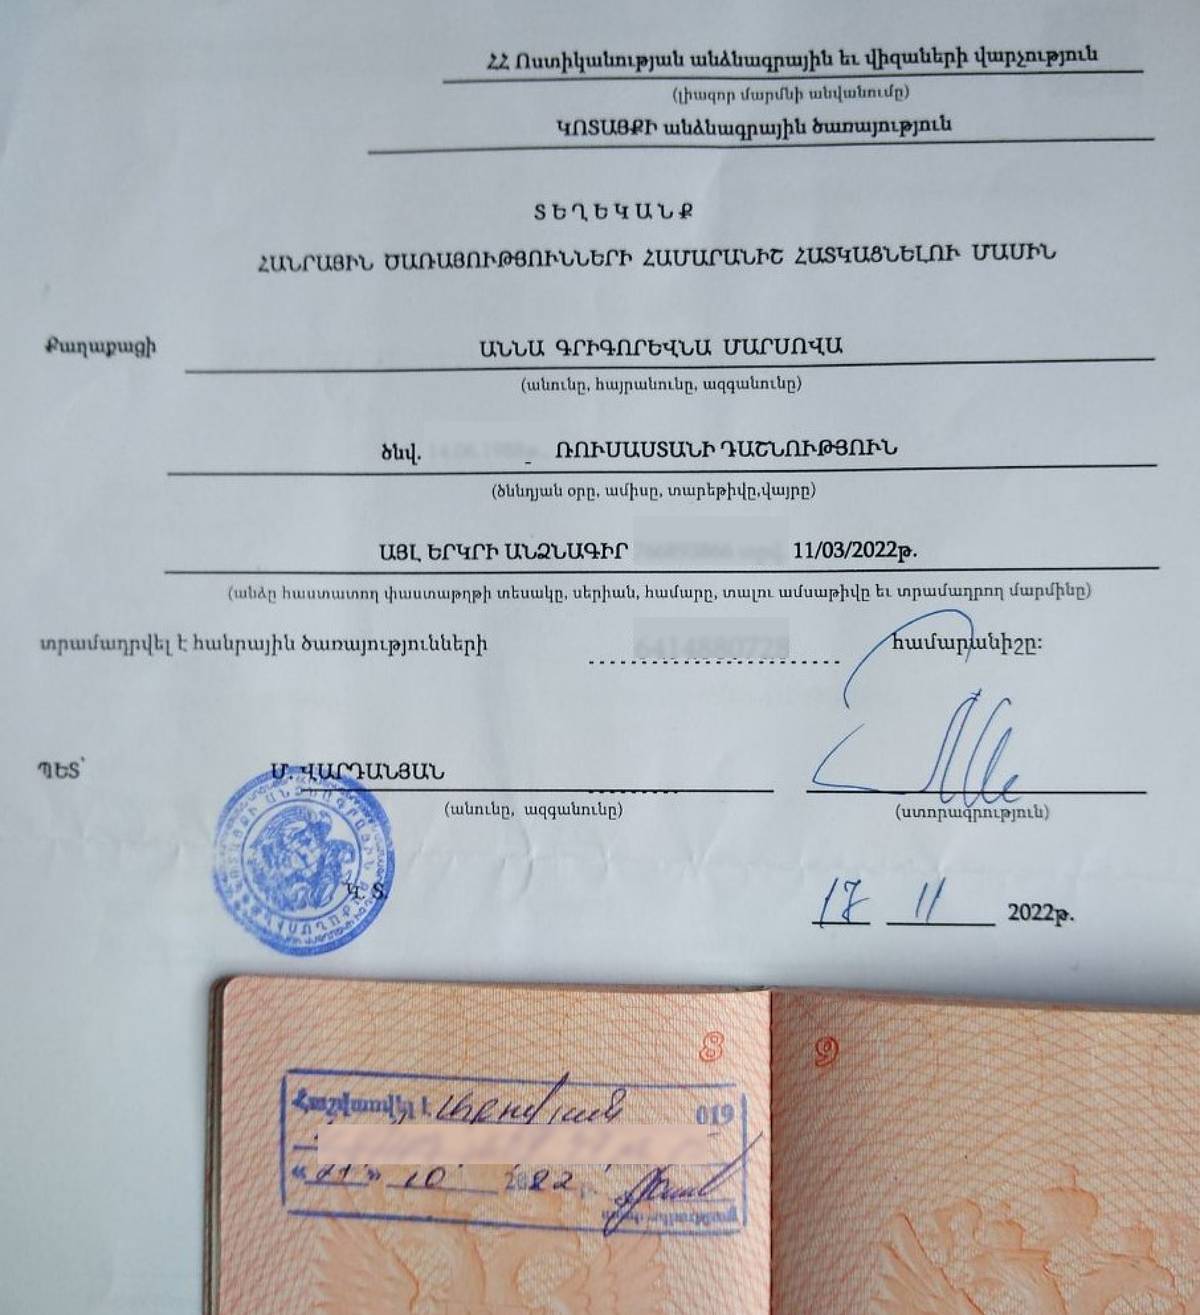 Регистрация и соцката — подтверждение легального проживания в Армении